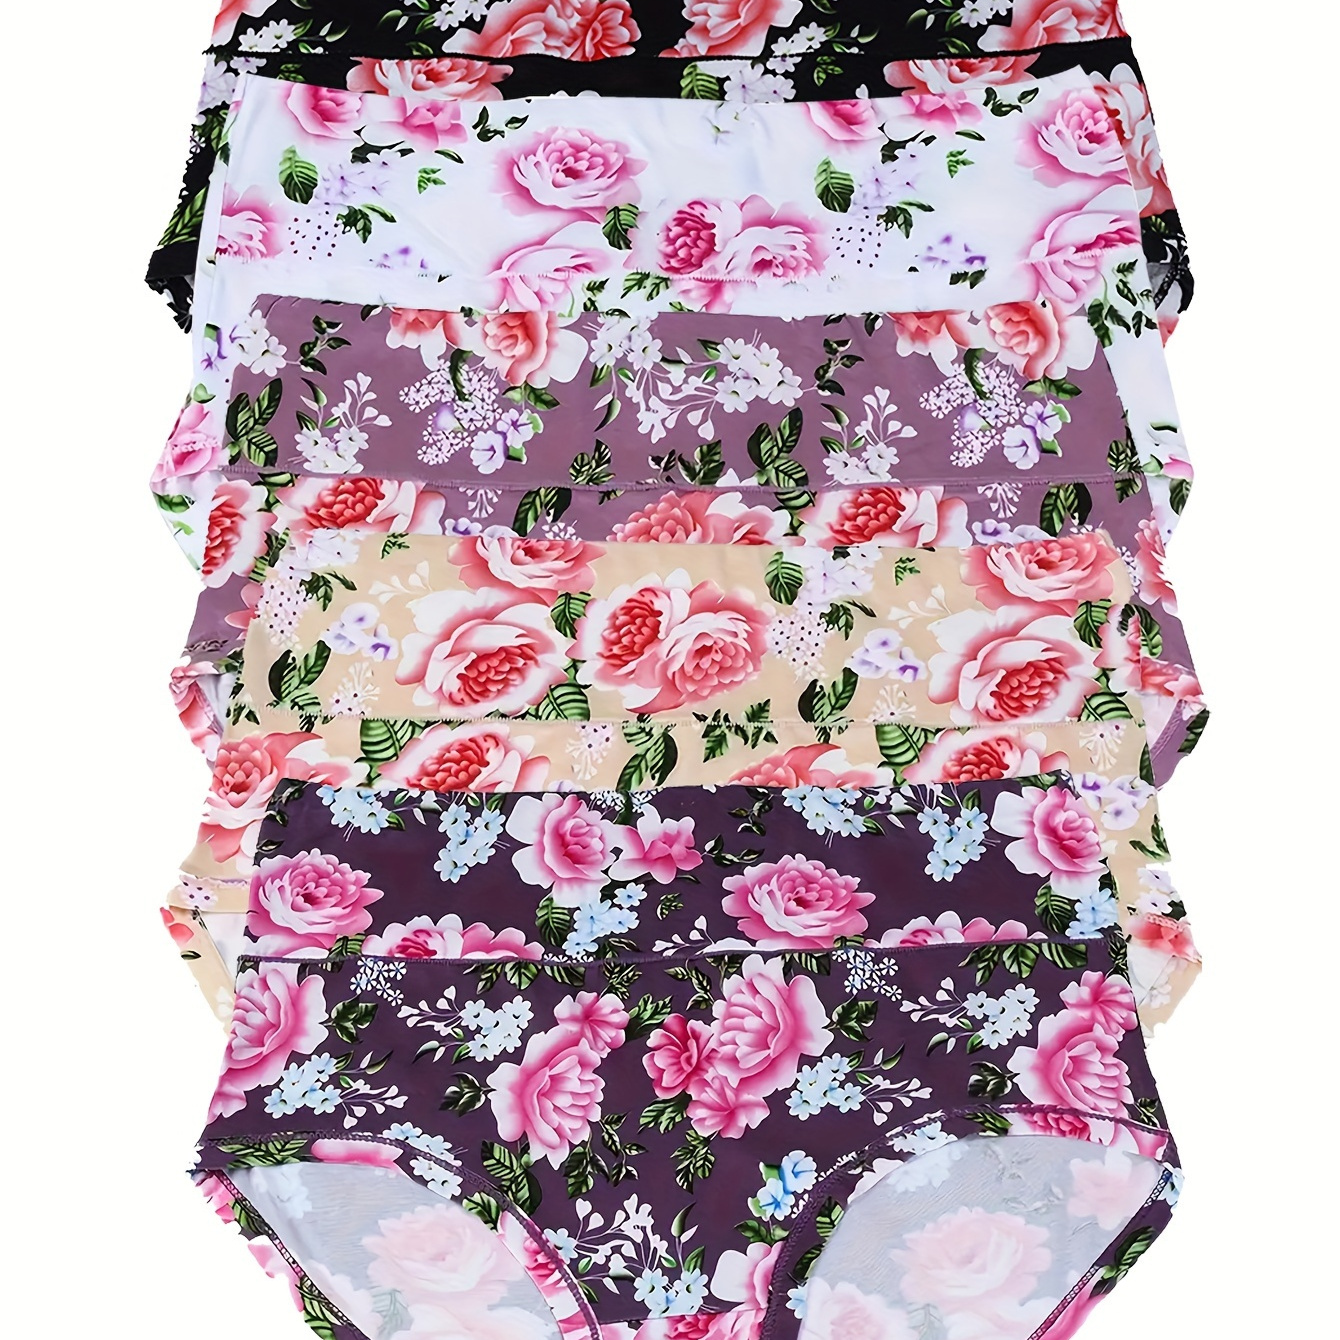 

5 Pack Women's Elegant Panties Set, Plus Size Floral Print High Rise Breathable Soft Briefs 5pcs Set